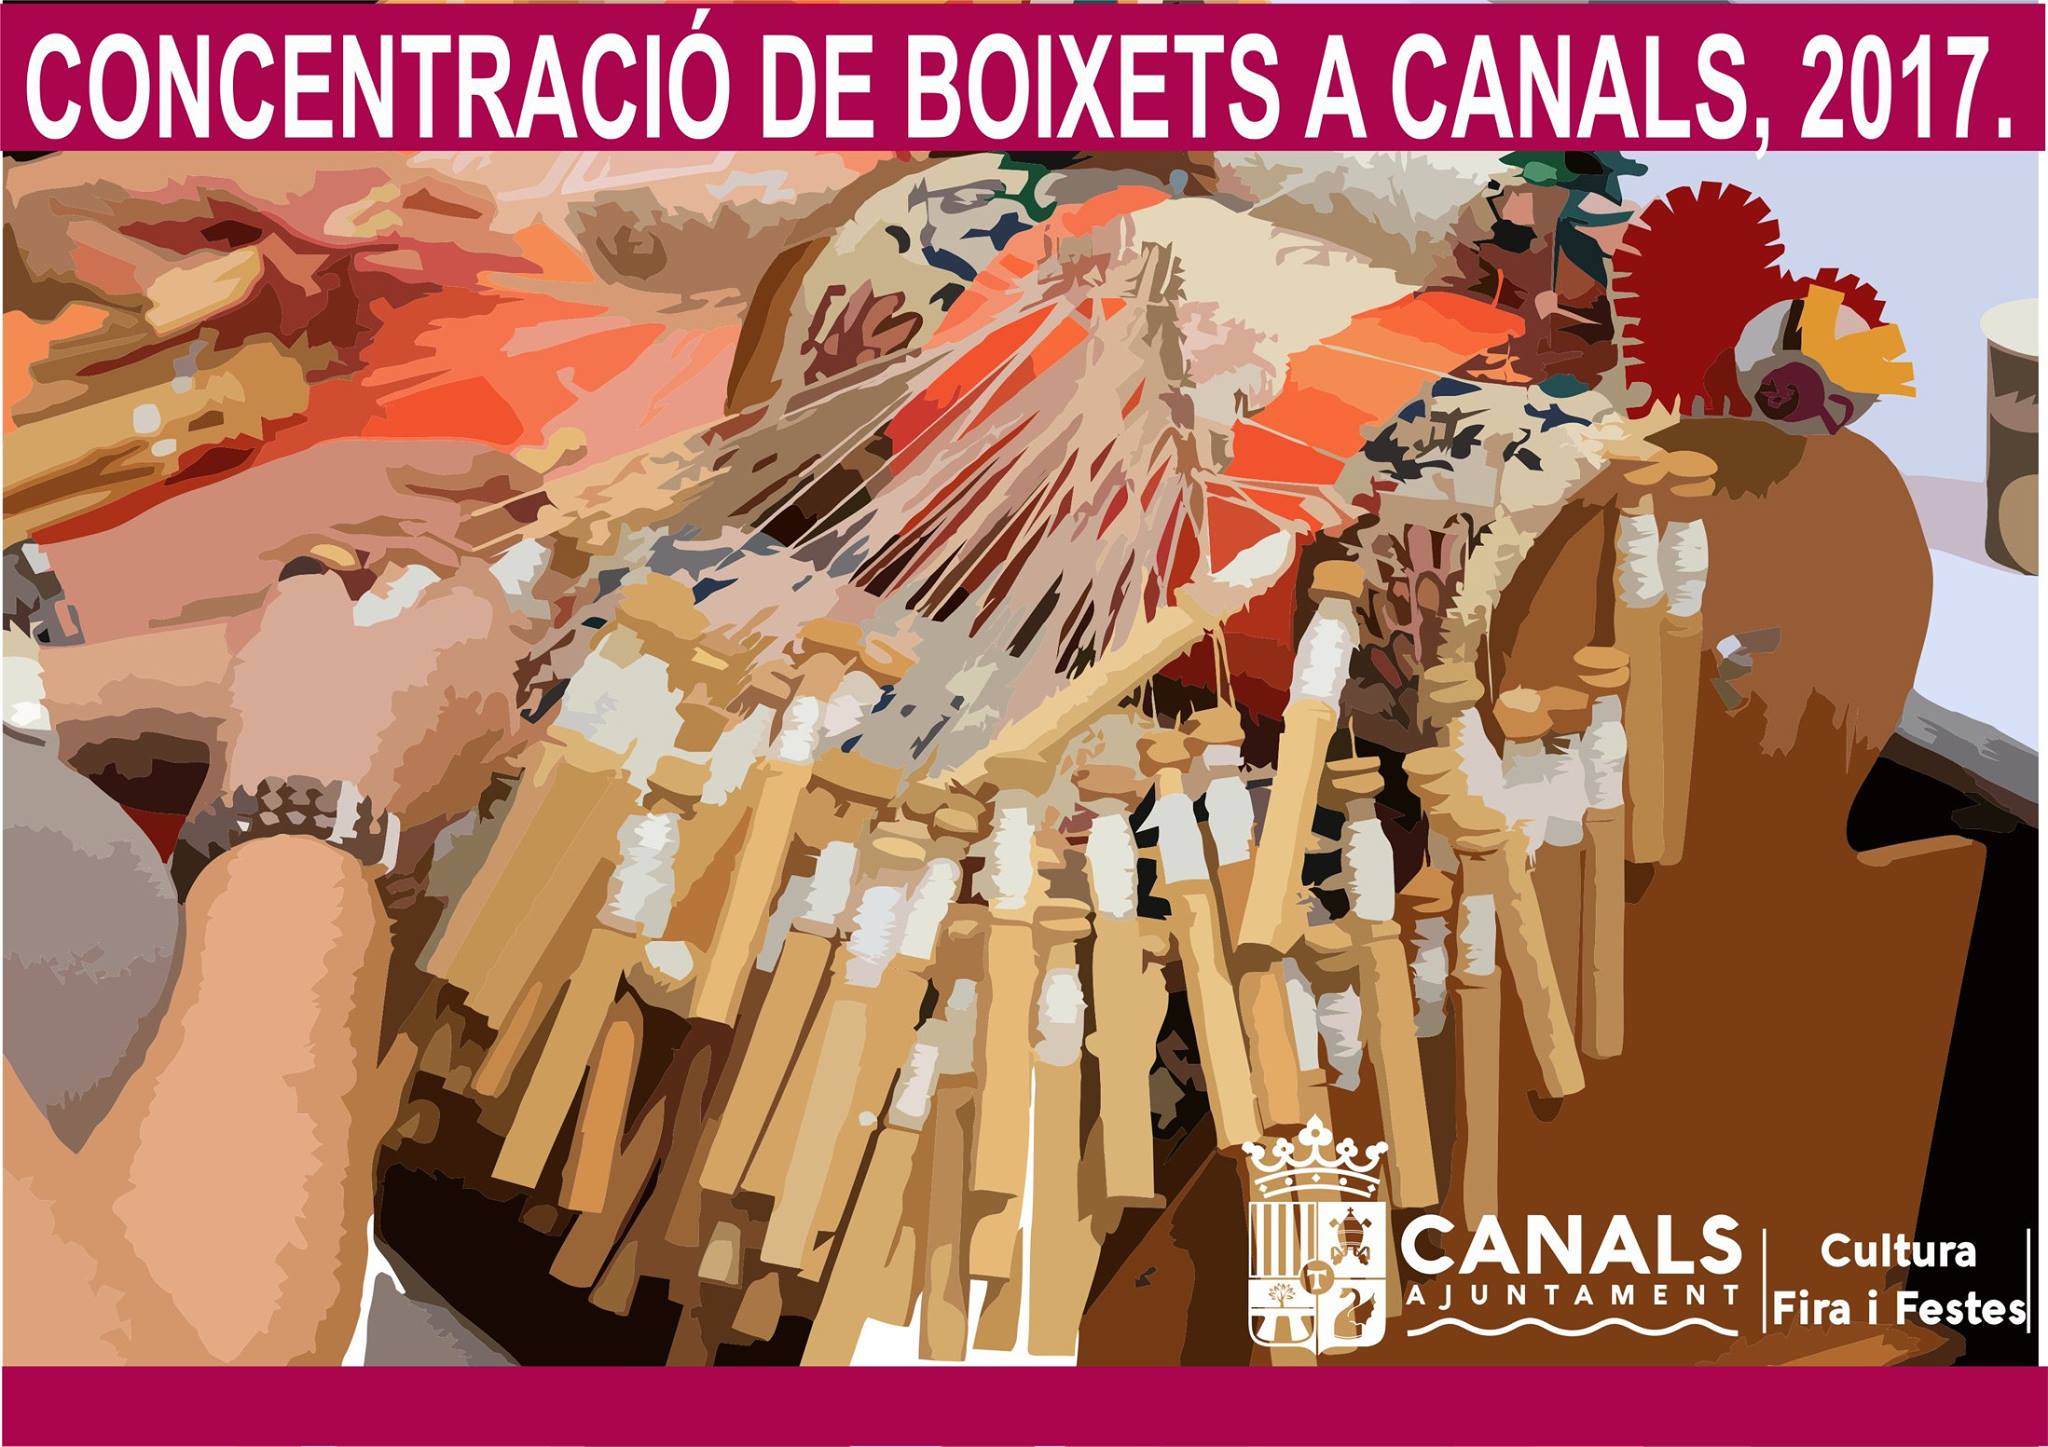 2017.01.14 Concentració de boixets a Canals 2017. Ajuntament de Canals.